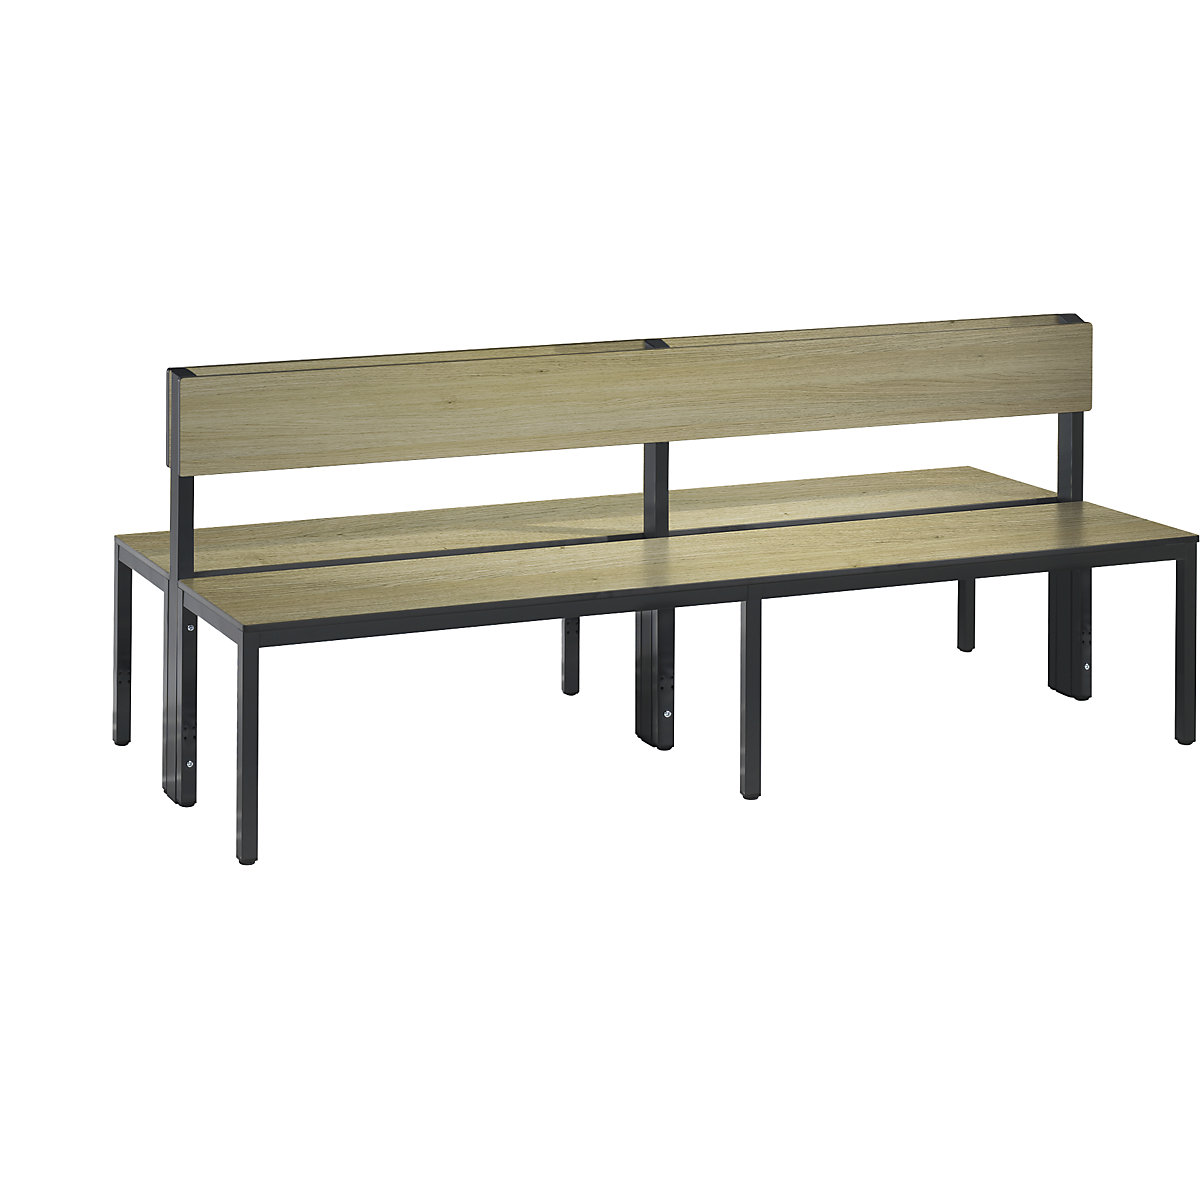 Šatňová lavica BASIC PLUS, dvojstranná – C+P, plocha sedadla HPL, polovysoká, dĺžka 1960 mm, vzor dub-9